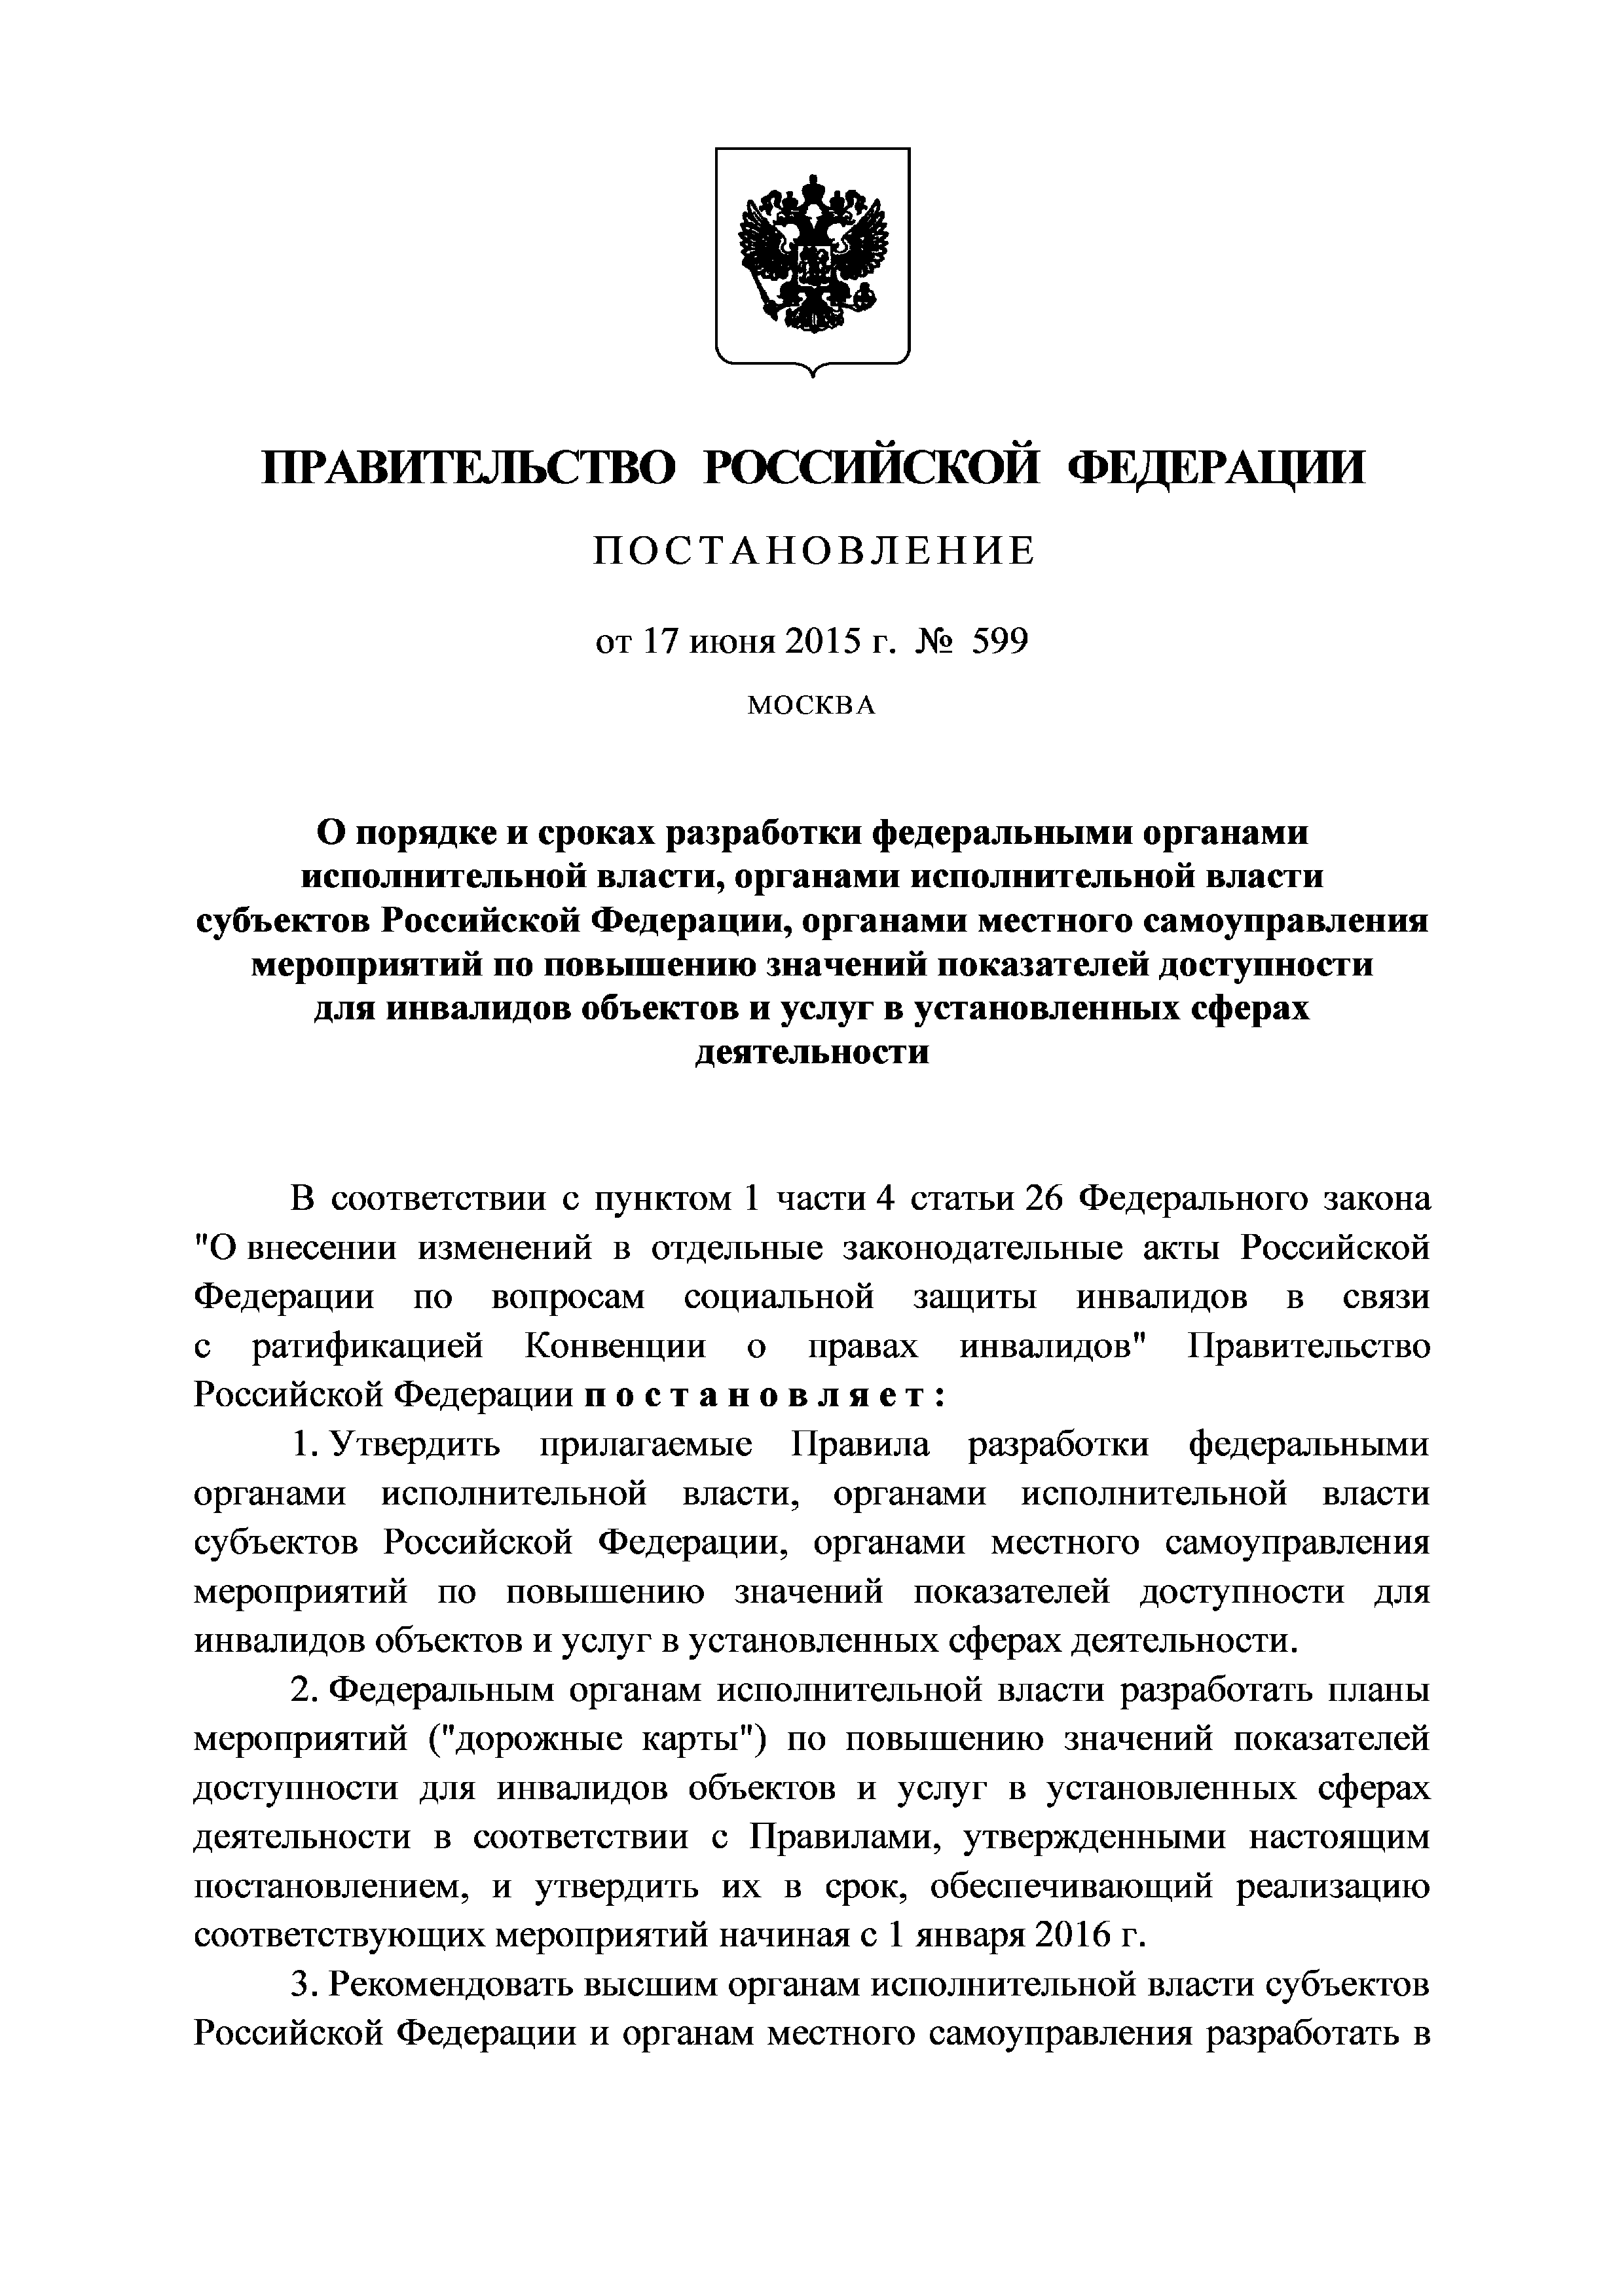 Органы исполнительной власти субъектов РФ